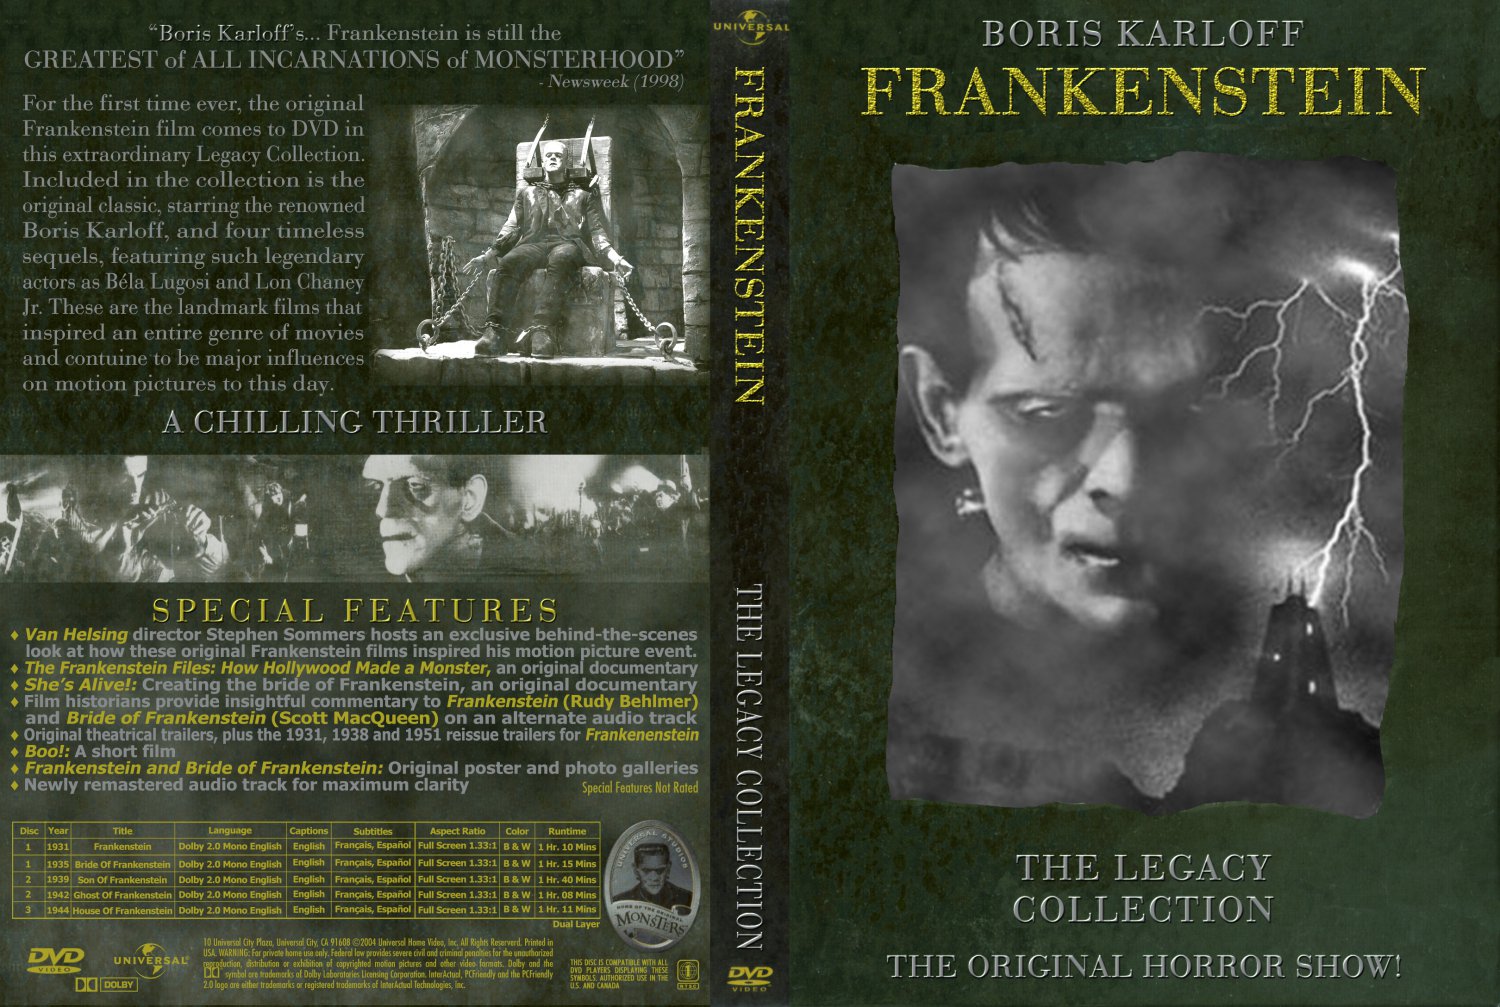 Frankenstein kápan á 75 ára afmæli myndarinnar.